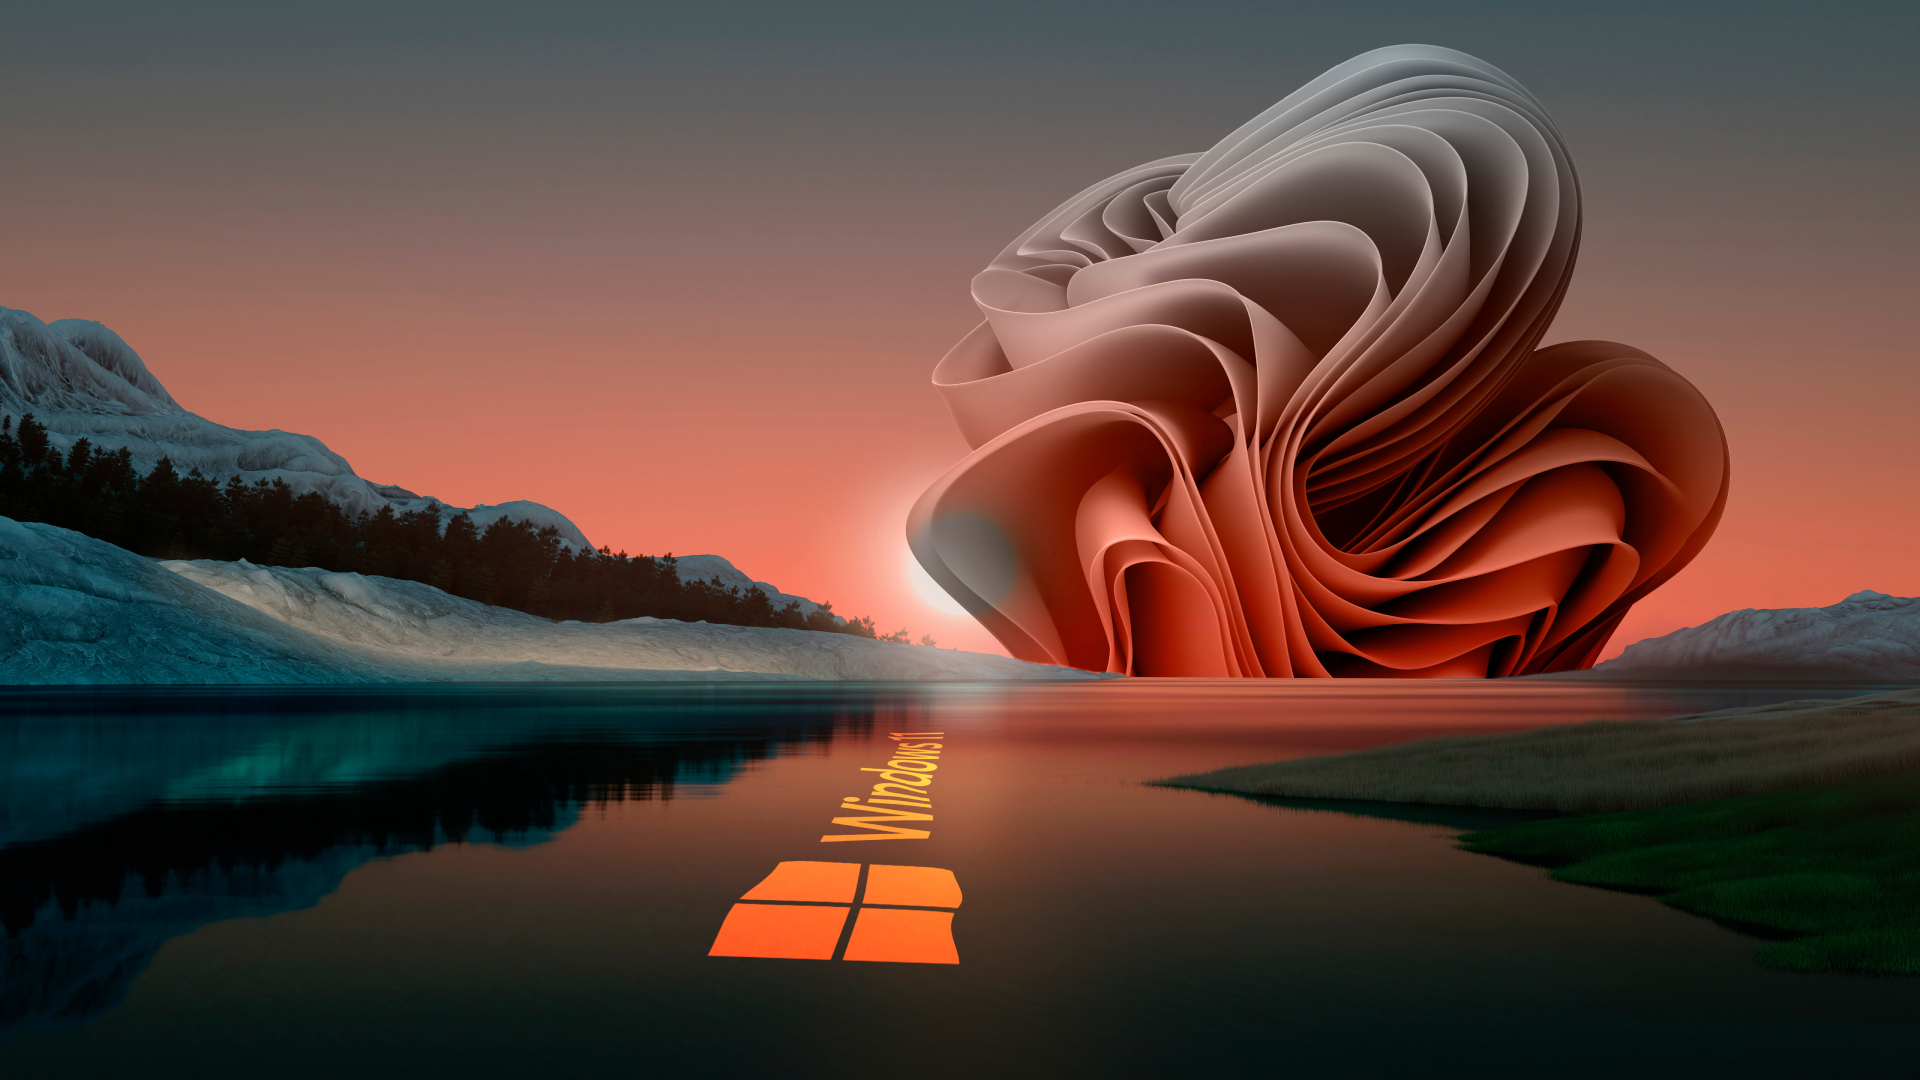 Windows 11 Rise Art BWhraGqUmZqaraWkpJRmbmdlrWZlbWU 